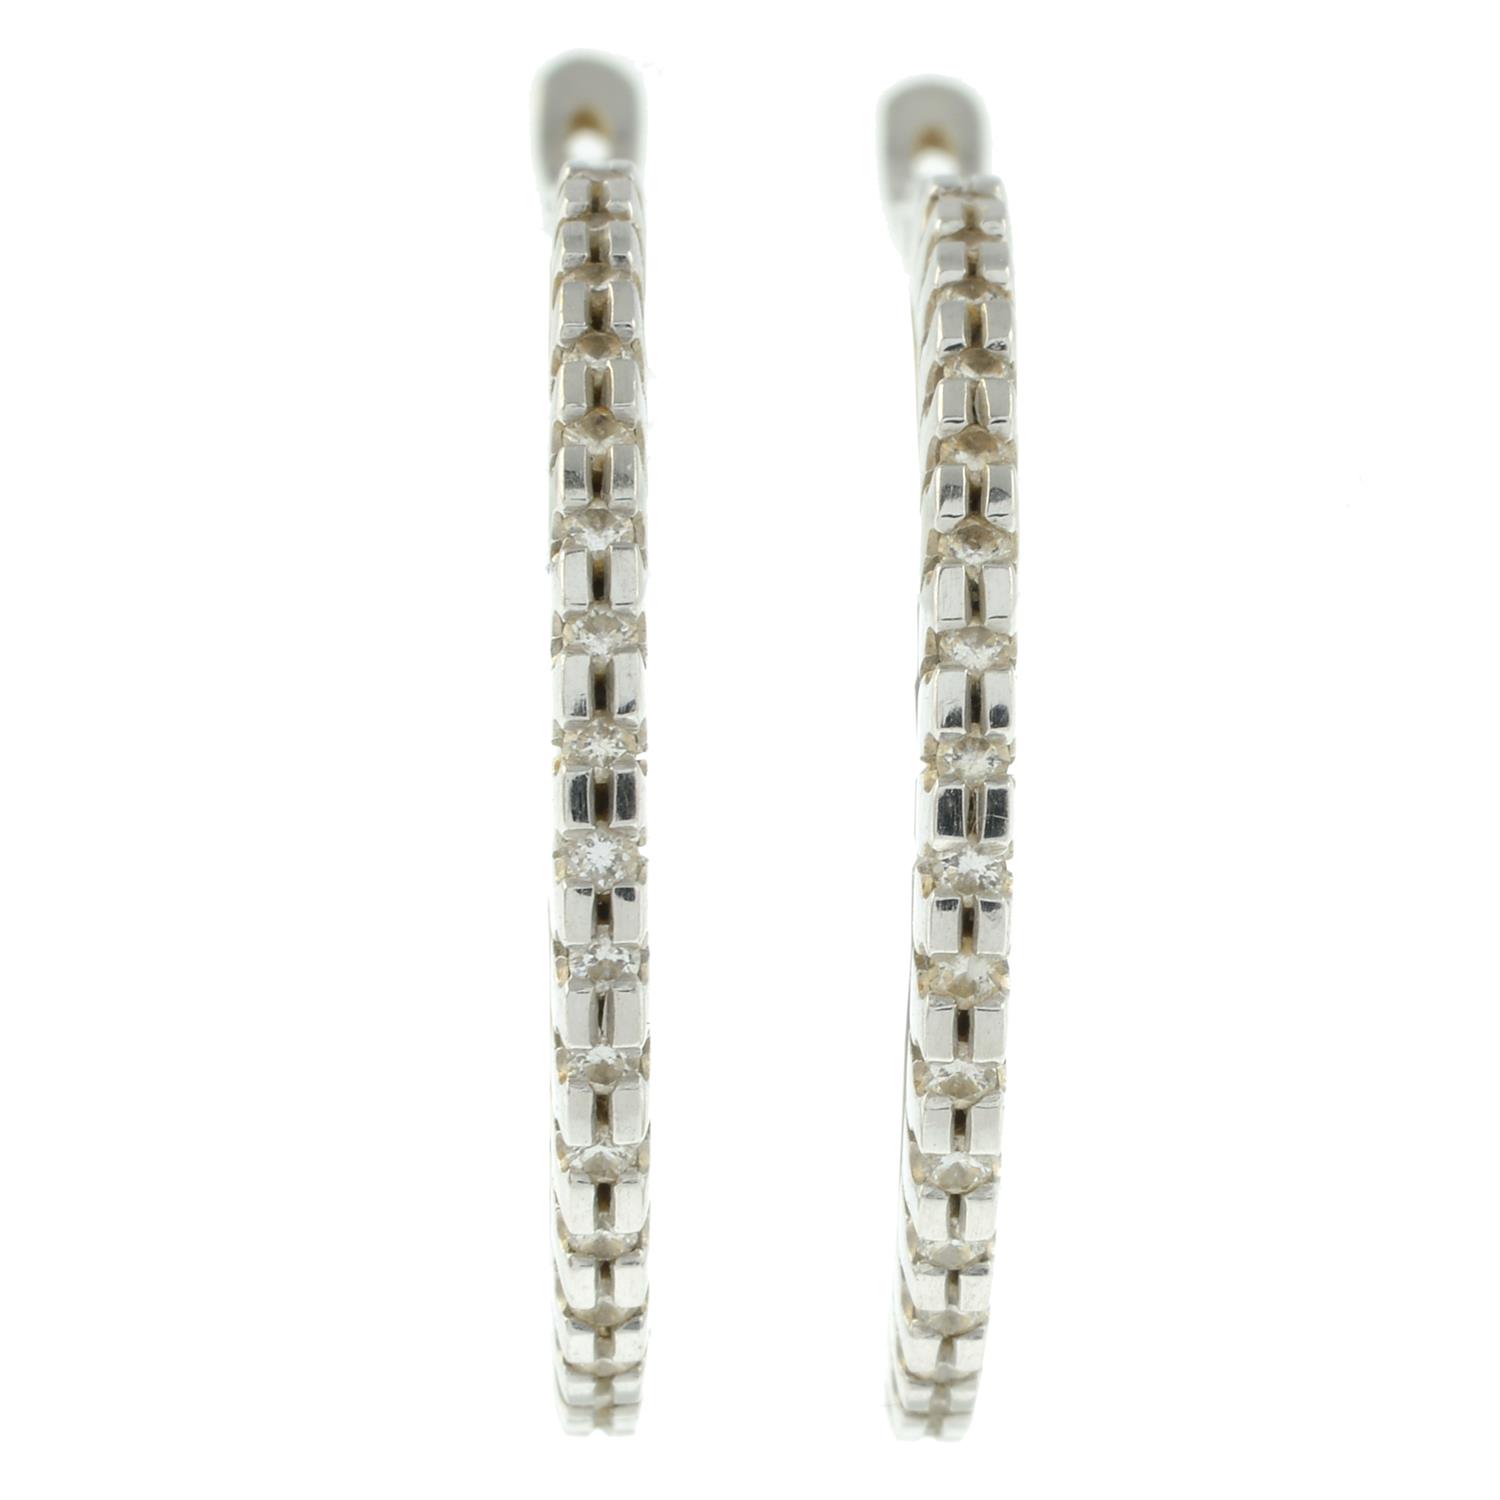 A pair of diamond hoop earrings.